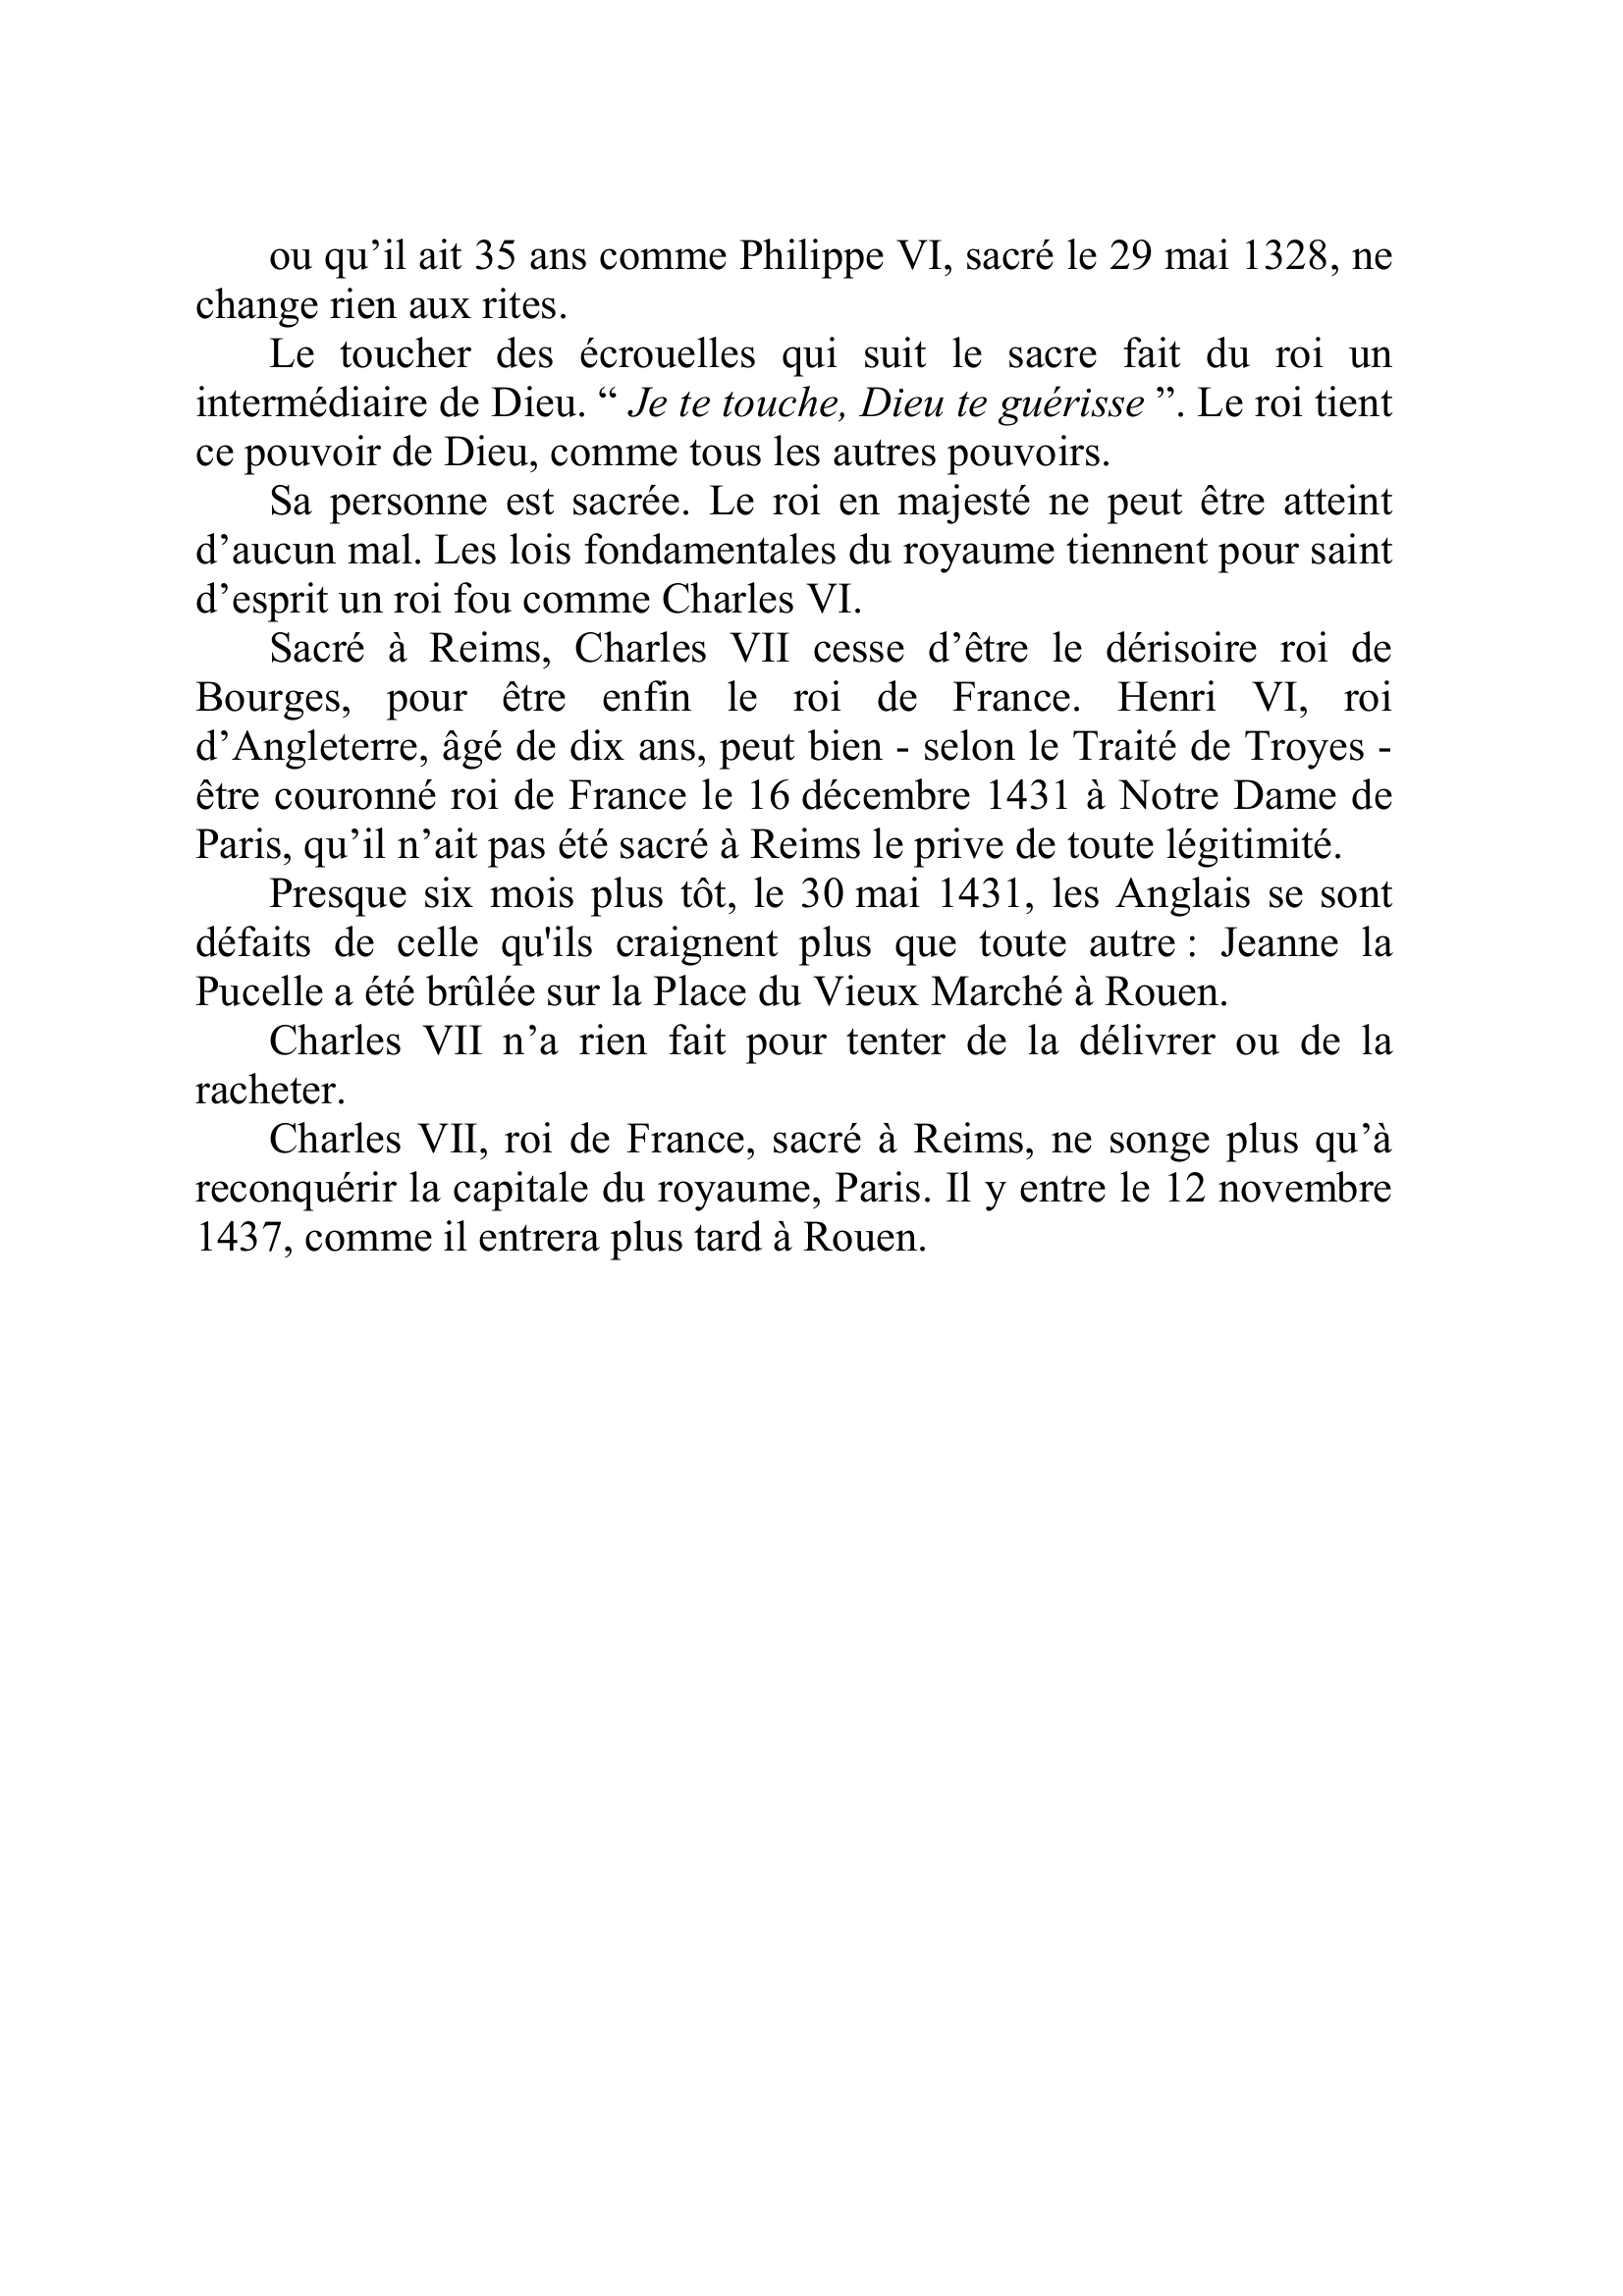 Prévisualisation du document Depuis la mort de Charles VI, enterré à Saint Denis le 11 novembre 1422, en dépit de la mort d'Henri V d'Angleterre le 31 août 1422, la menace qu'est le Traité de Troyes (qui permet au roi d'Angleterre de prétendre au trône de France) traité ratifié le 21 mai 1420, pèse toujours sur la France.